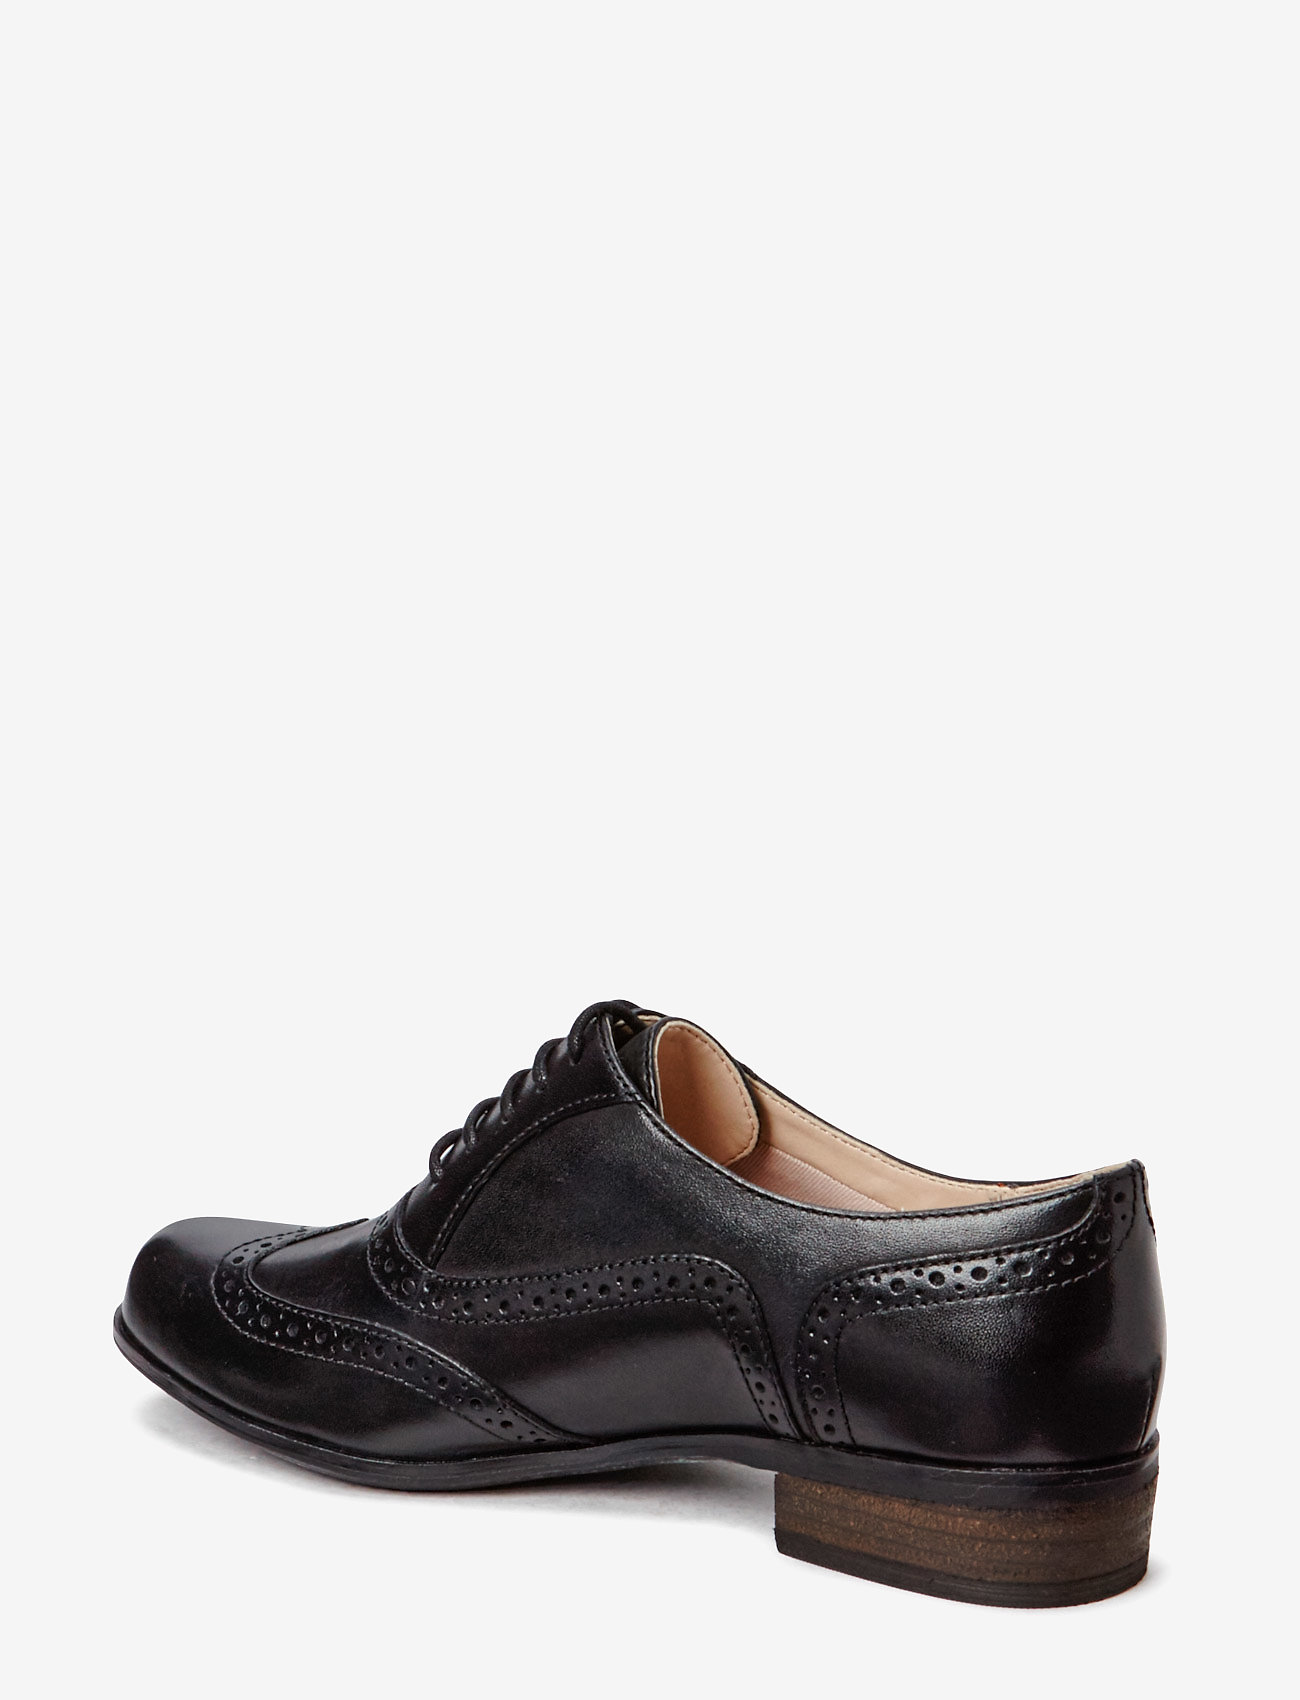 Clarks - Hamble Oak D - lage schoenen - 1216 black leather - 1